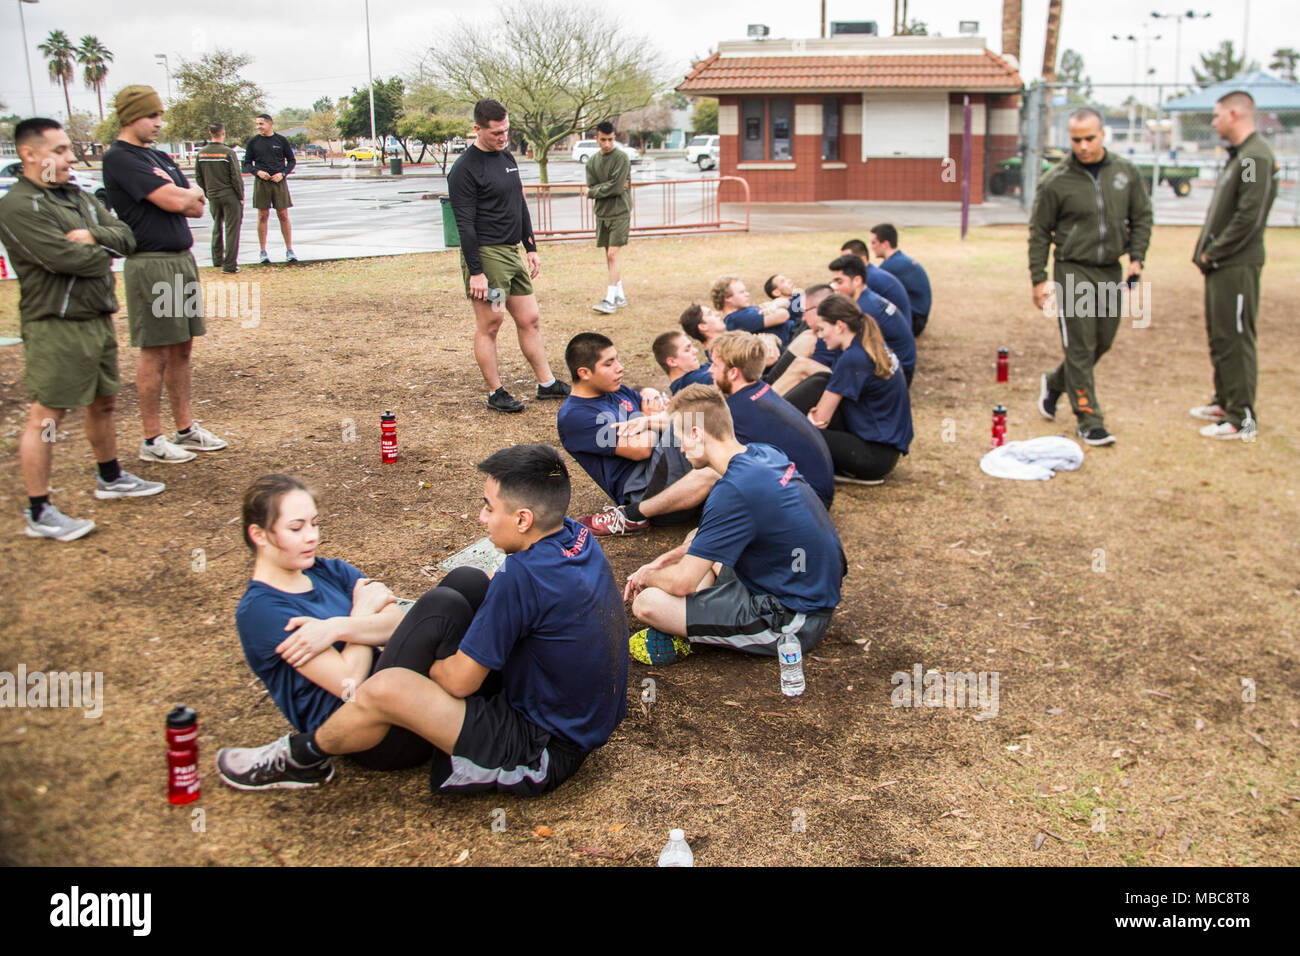 Maines américain avec de recrutement Phoenix faire un premier essai de résistance à l'Encanto Park, Phoenix, Arizona le 15 février 2018. L'IST assure poolees sont prêts pour le défi physique des recrues du Corps des marines les présente. Banque D'Images